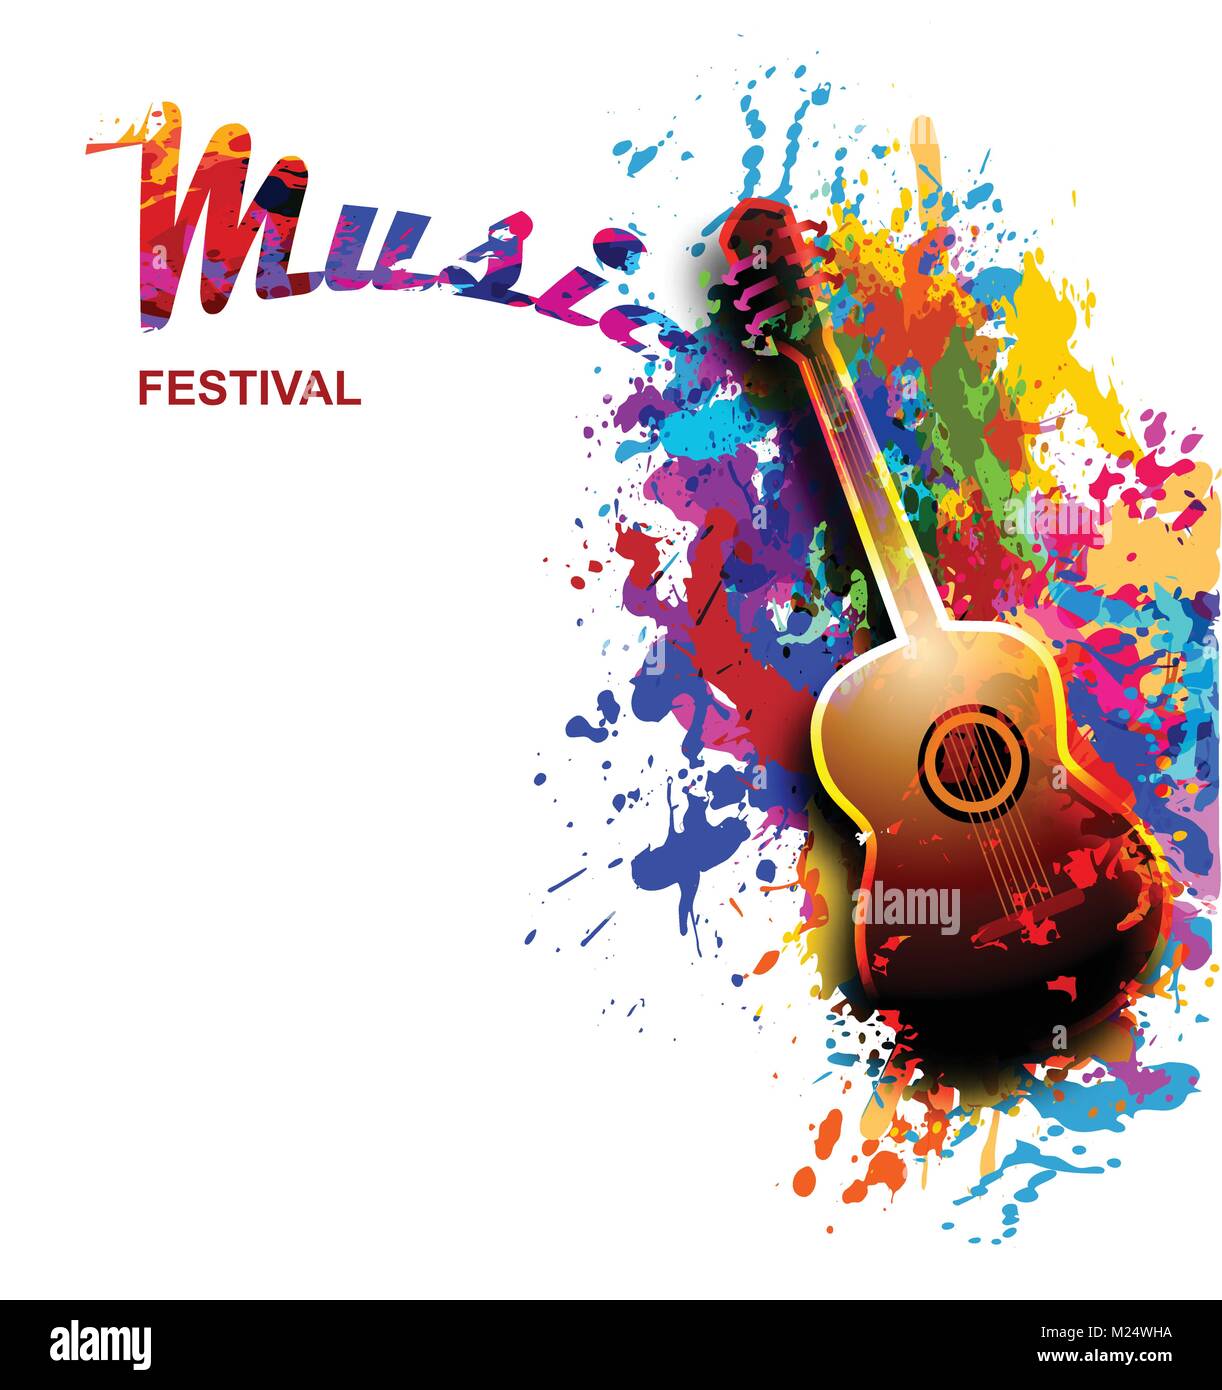 Festival de musique en couleurs, arrière-plan circulaire avec la guitare classique Illustration de Vecteur